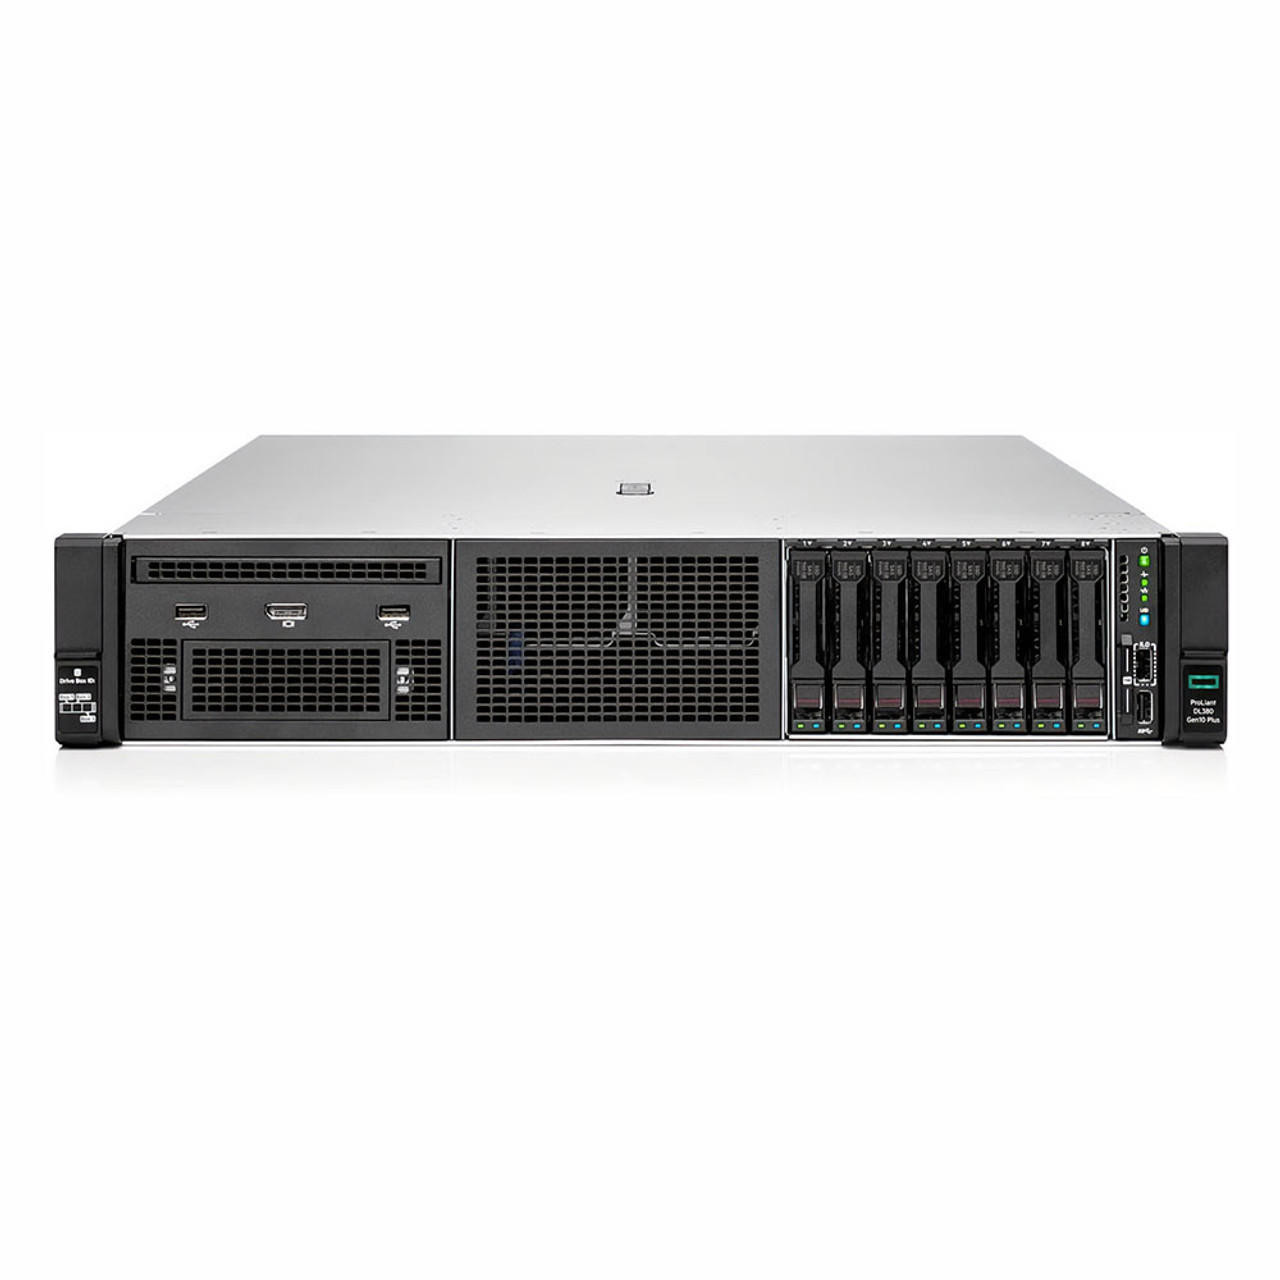 HP ProLiant DL380 Gen10 8 Bay SFF Server - 2x Intel Xeon Gold 6148 (2.40  GHz) 20C - 256GB DDR4 - No Storage - No NIC - P408I-A - Refurbished